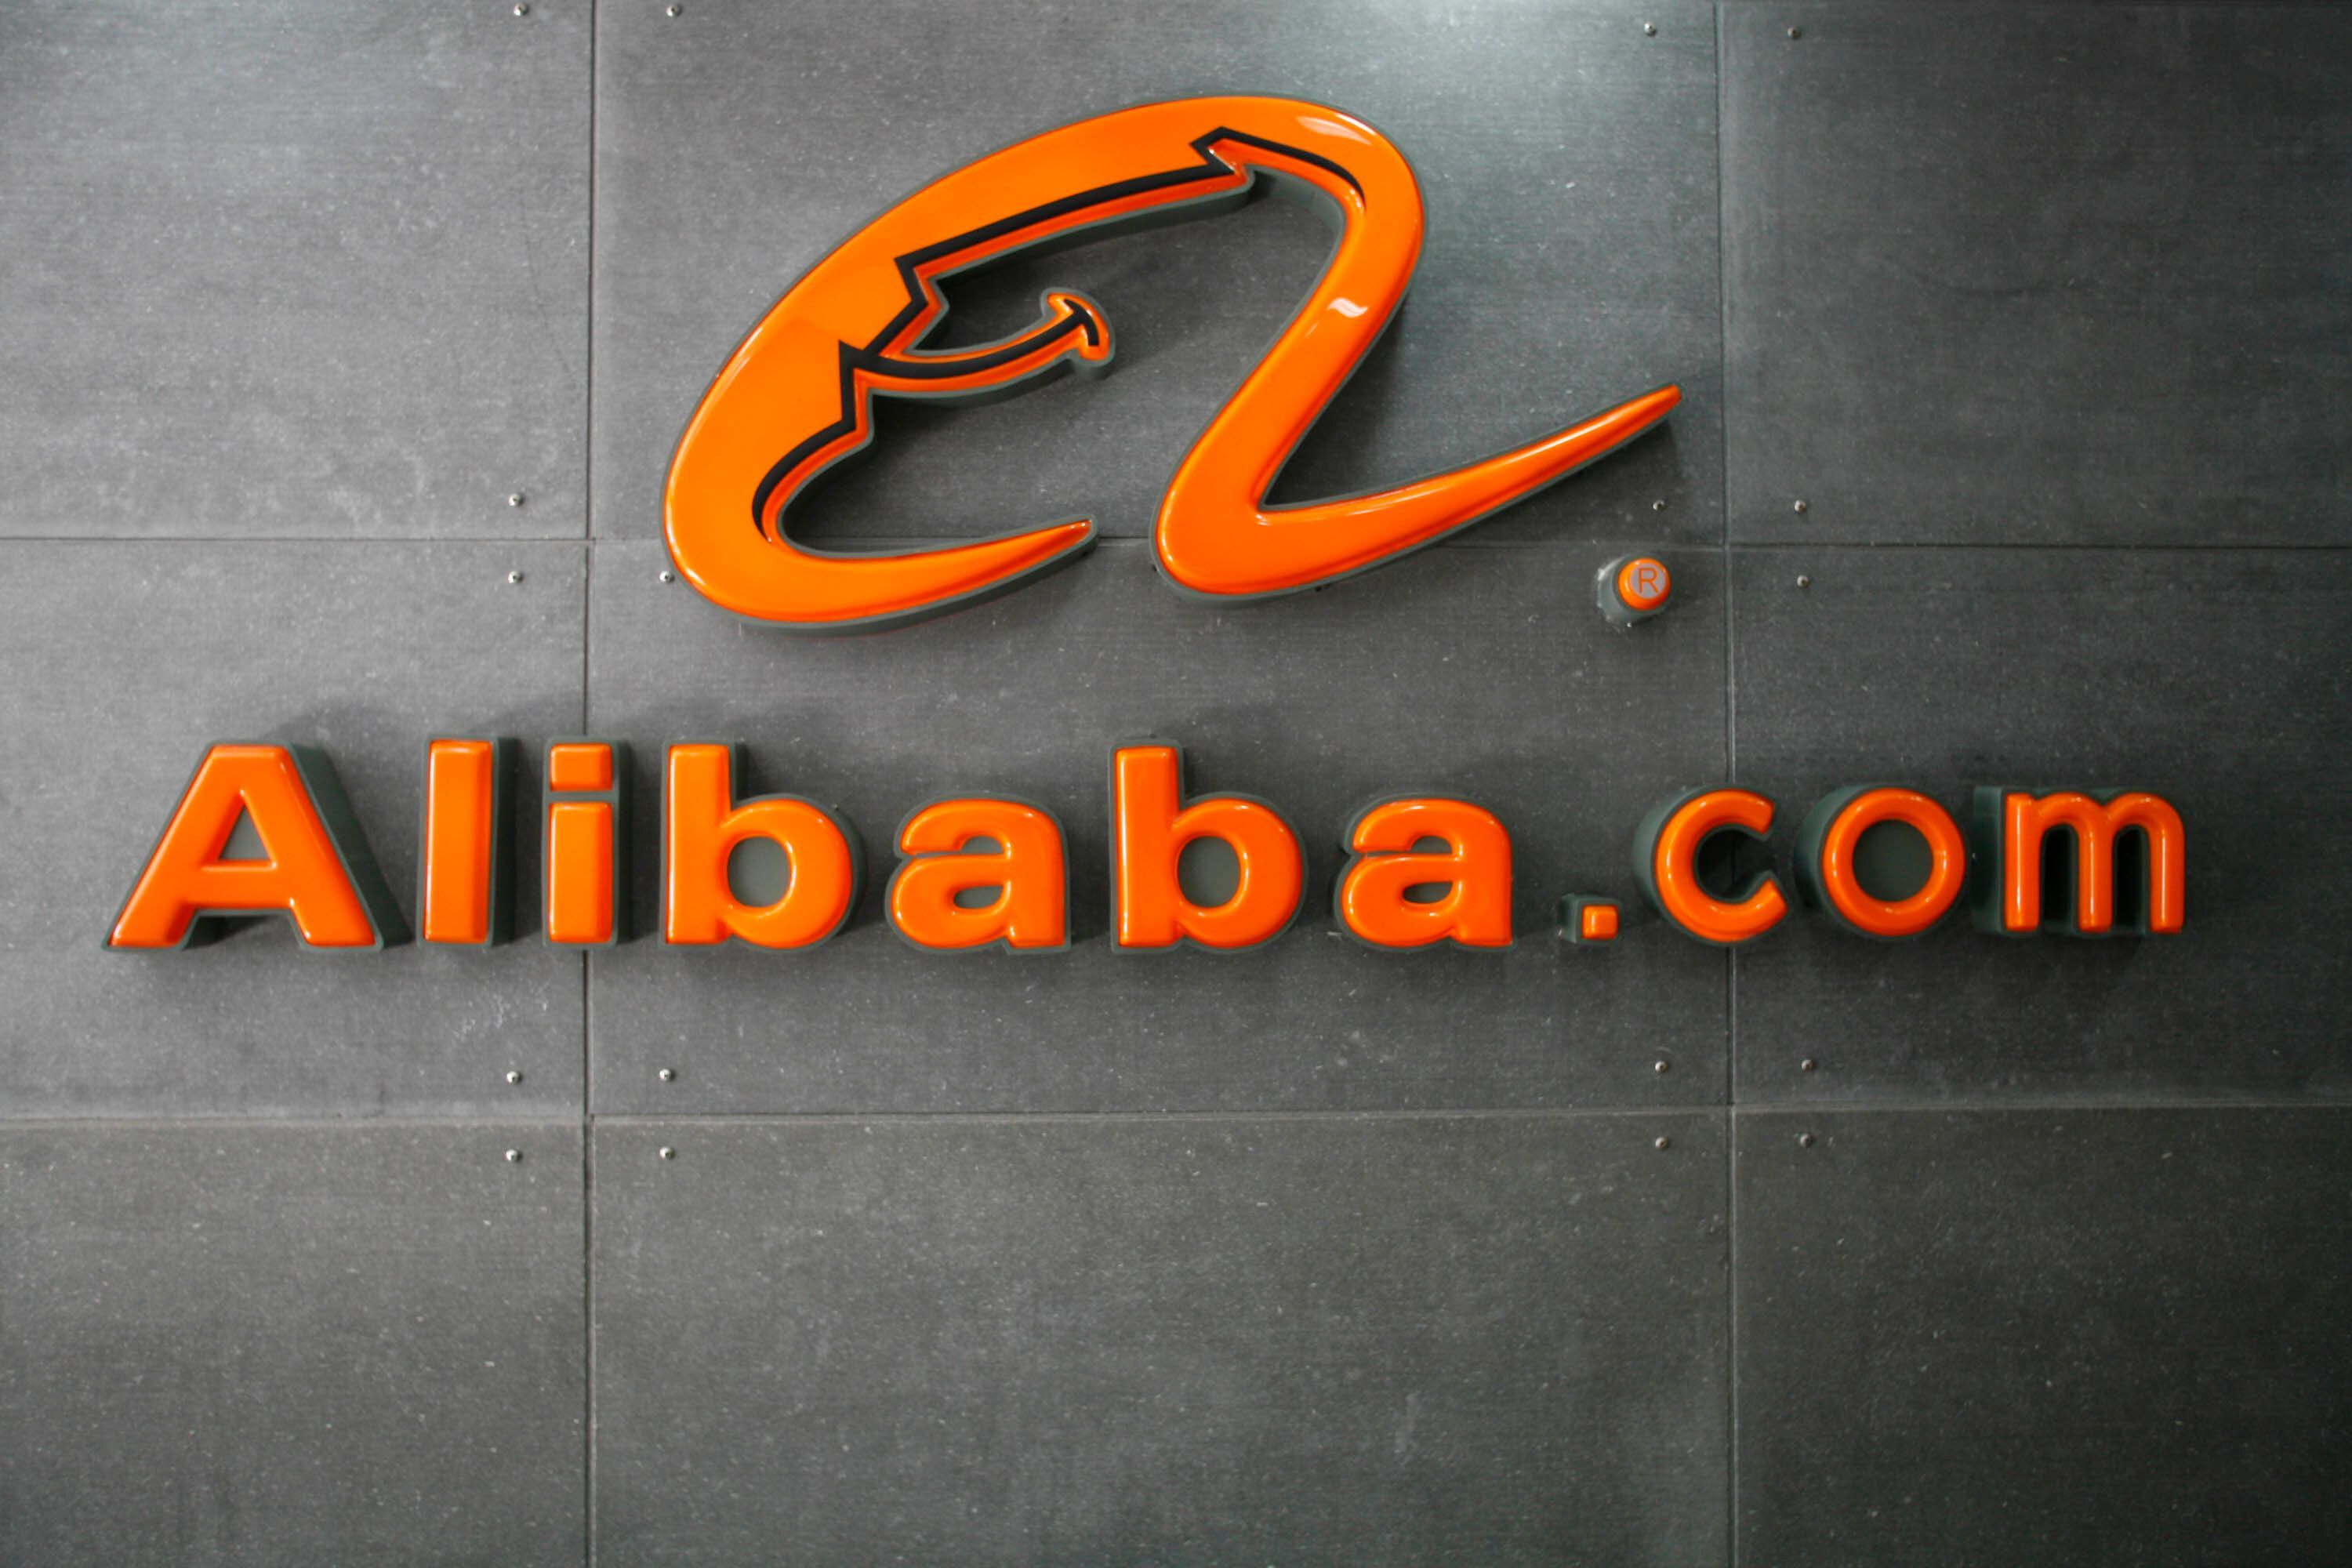 Вебинар «Alibaba.com - новые возможности продаж ювелирных украшений»